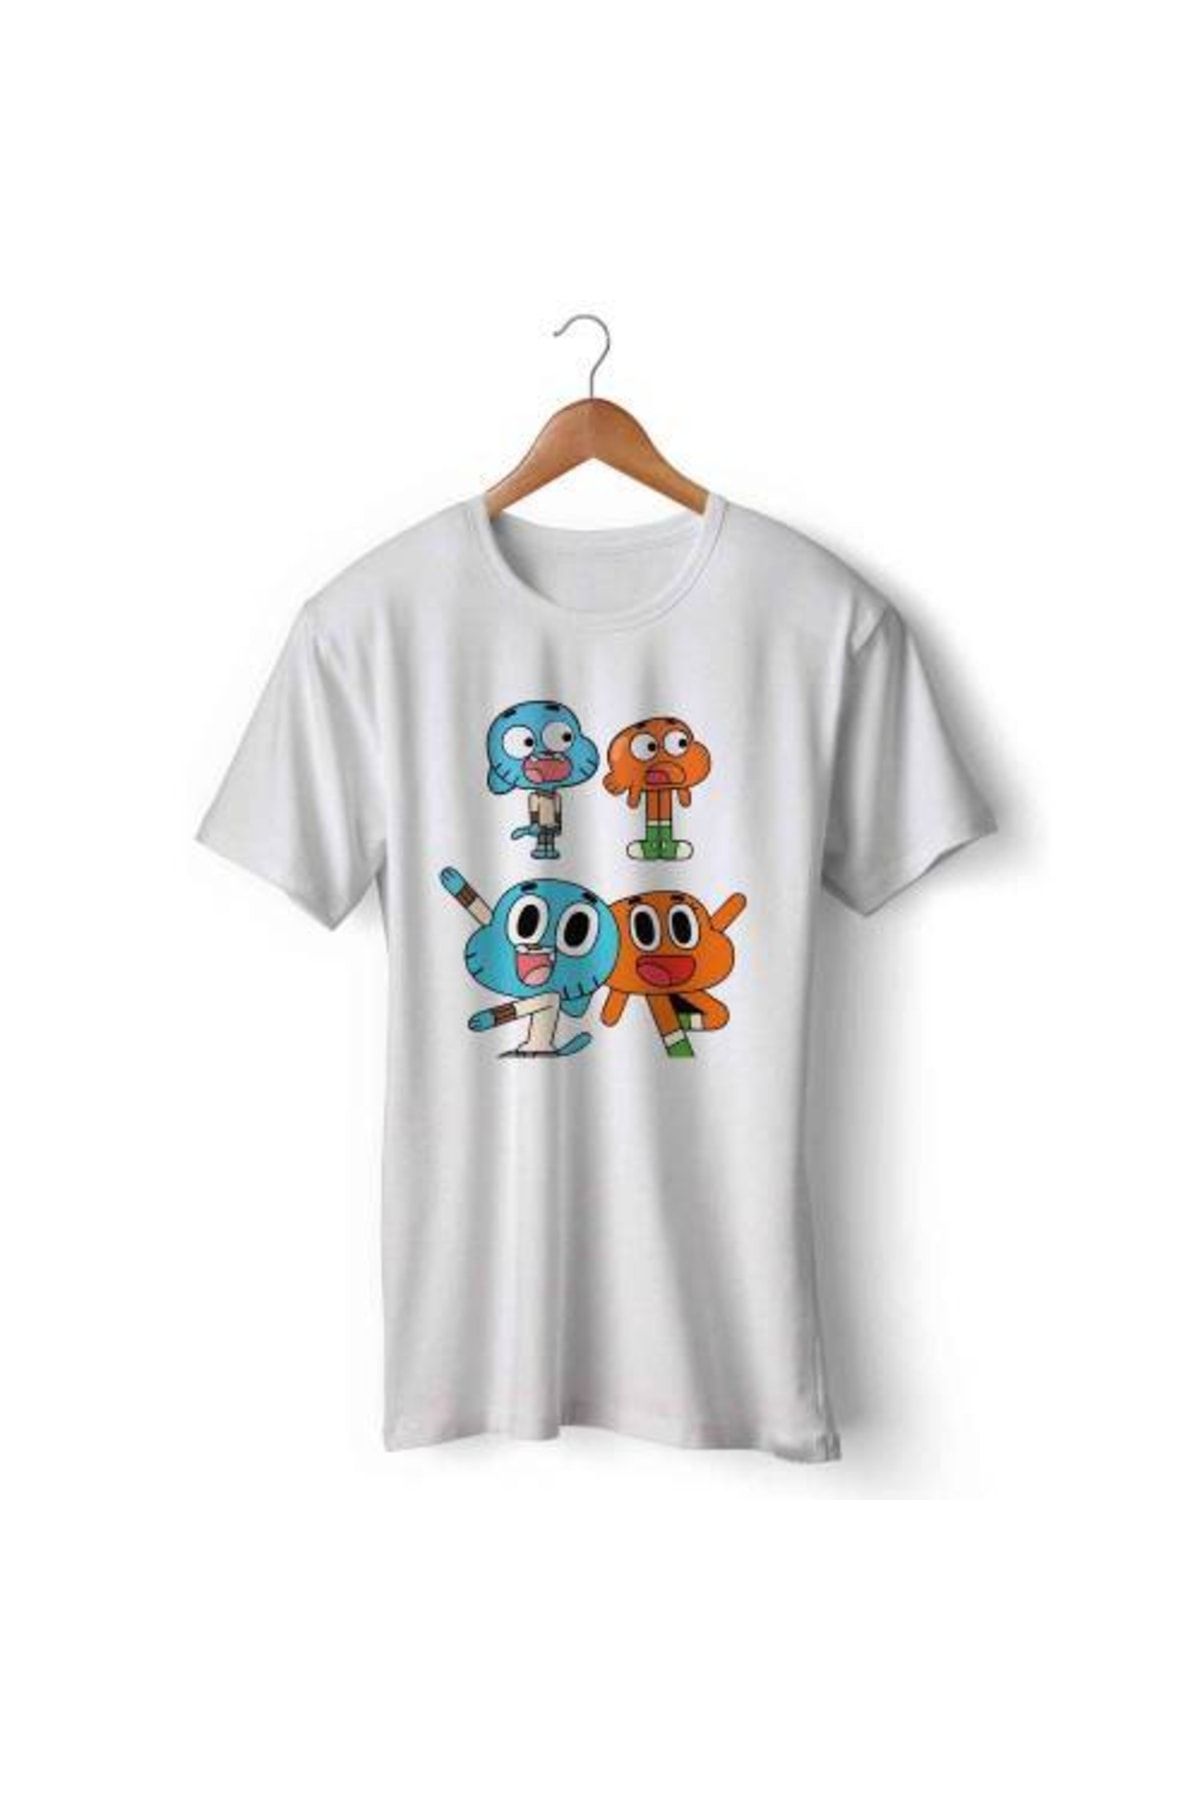 Art T-Shirt Xs Beden Gumball Cartoon Network Kısa Kol Tişört T-shirt